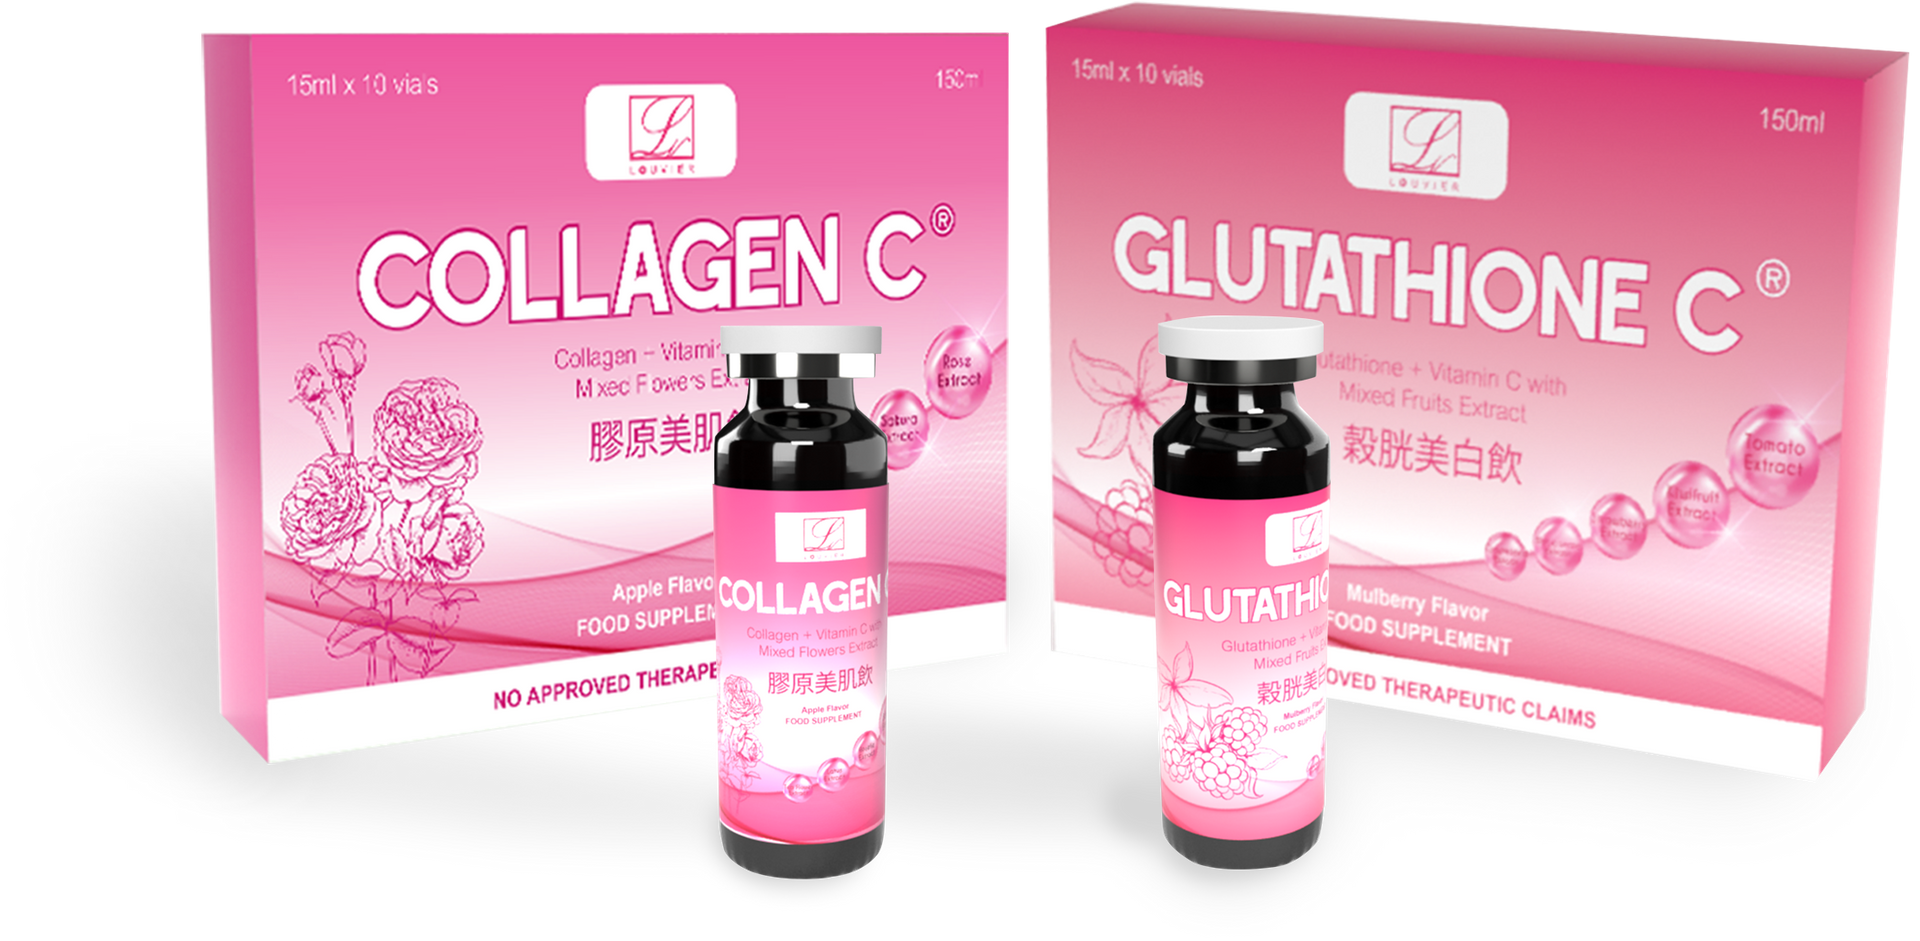 Collagen C & Glutathione C power duo